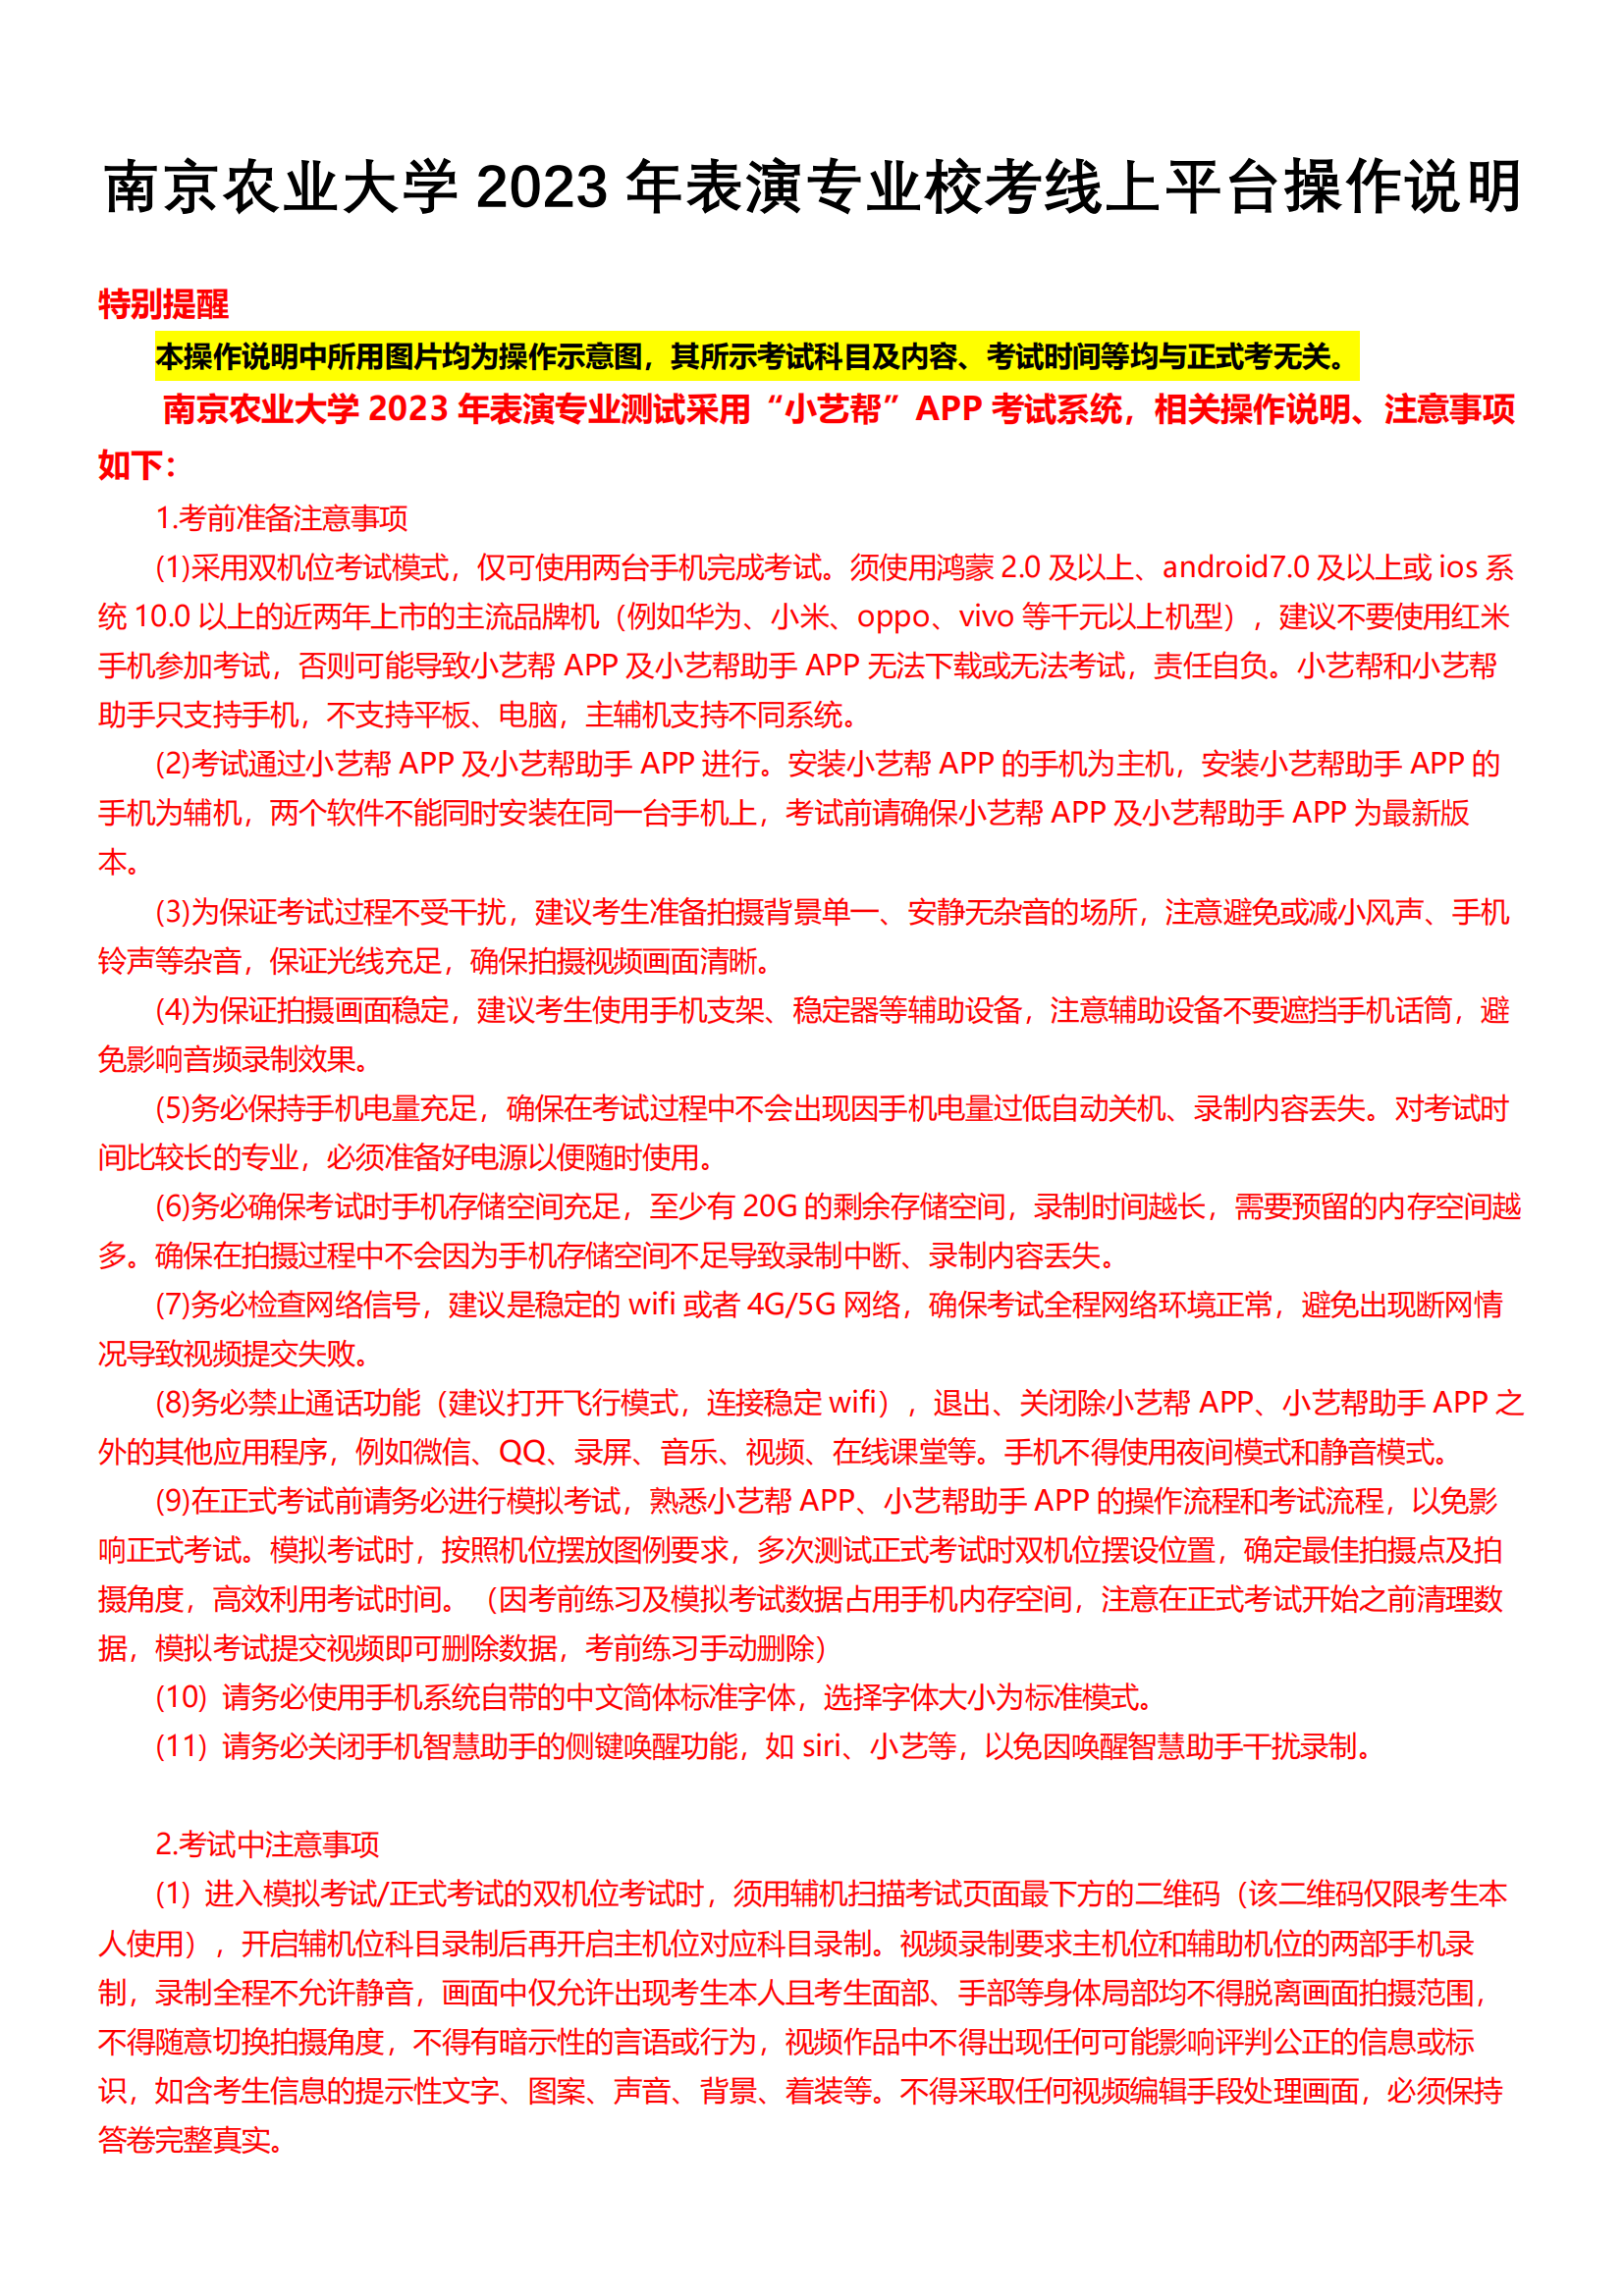 南京农业大学2023年表演专业校考线上平台操作说明_00.png